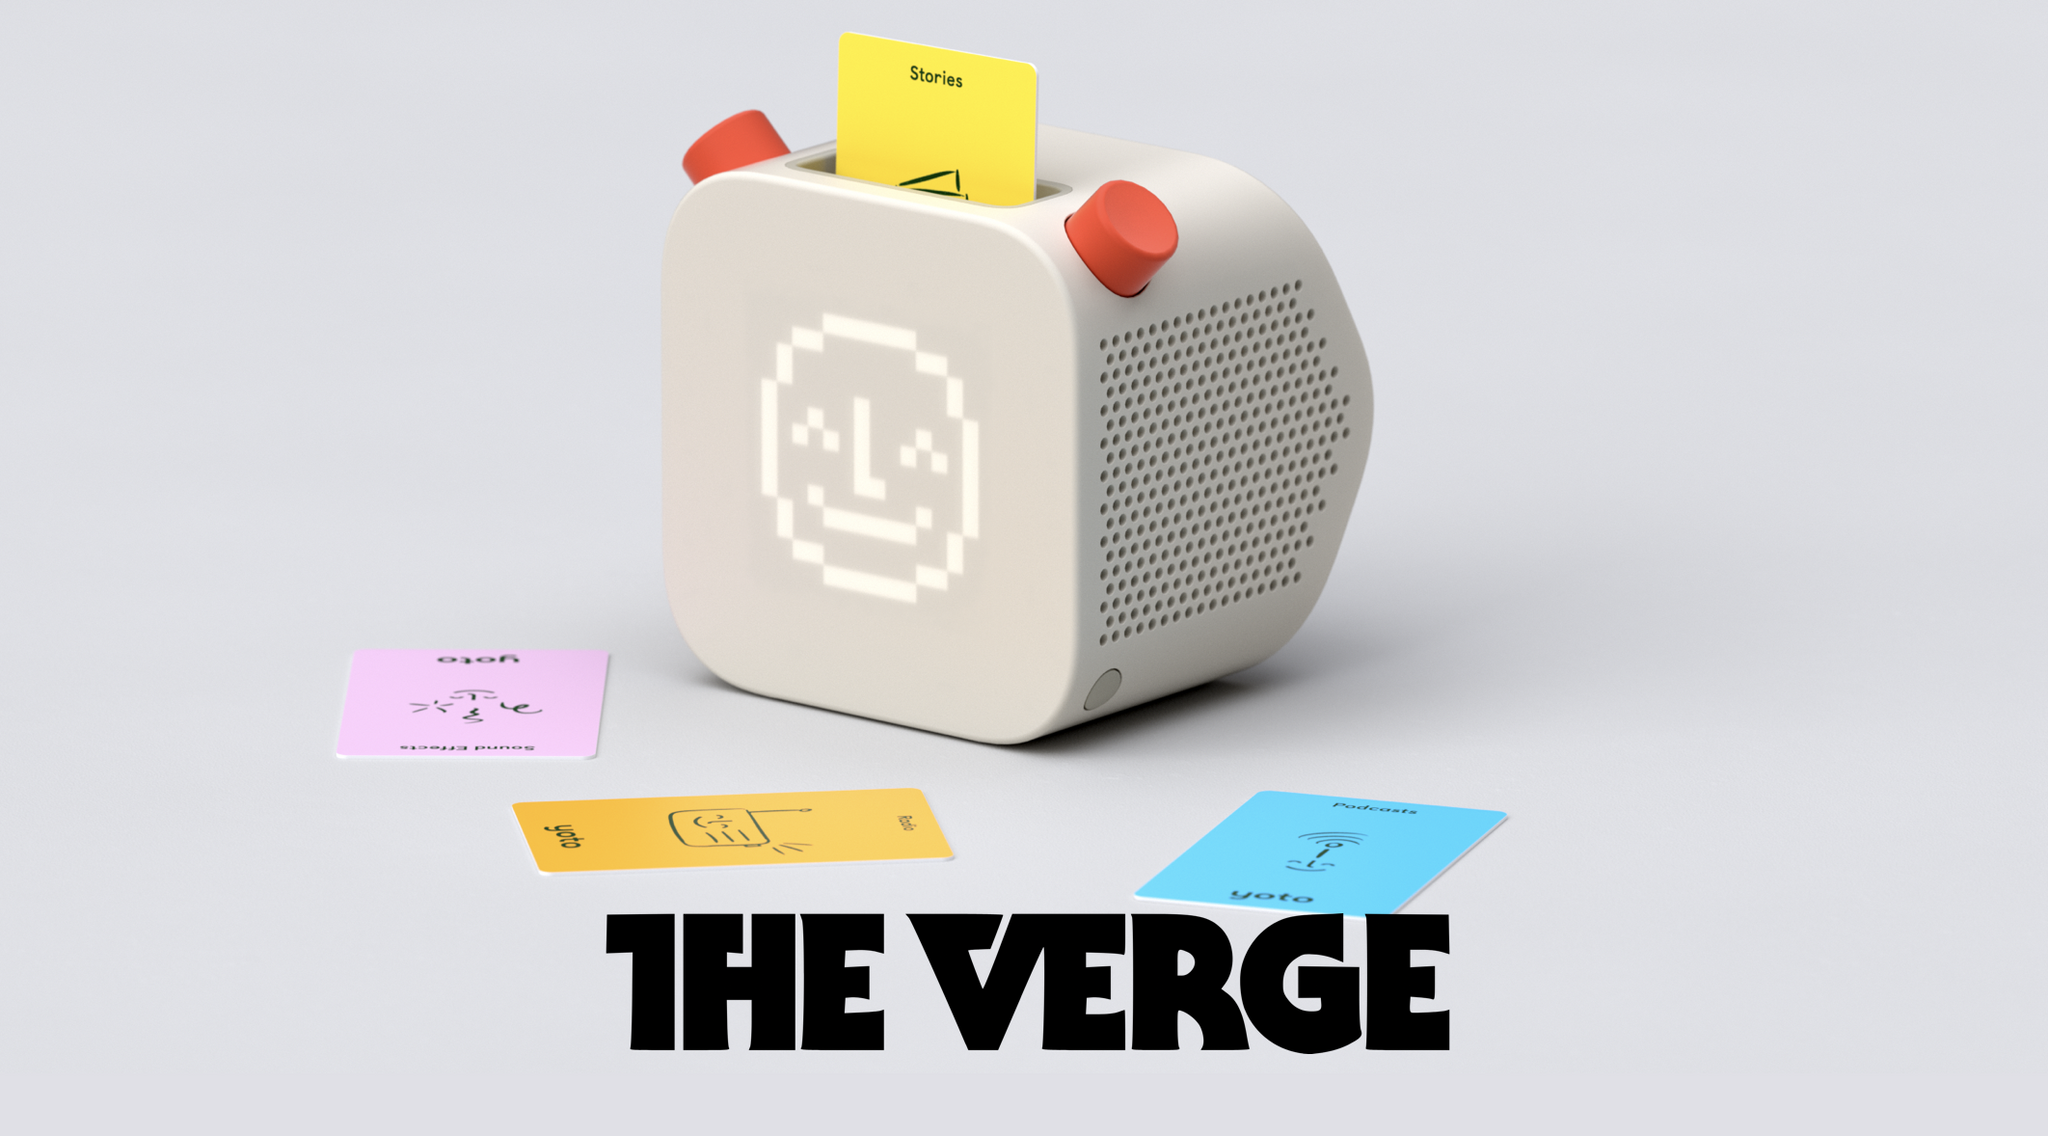 Pentagram designed a smart speaker that’s like HitClips for kids